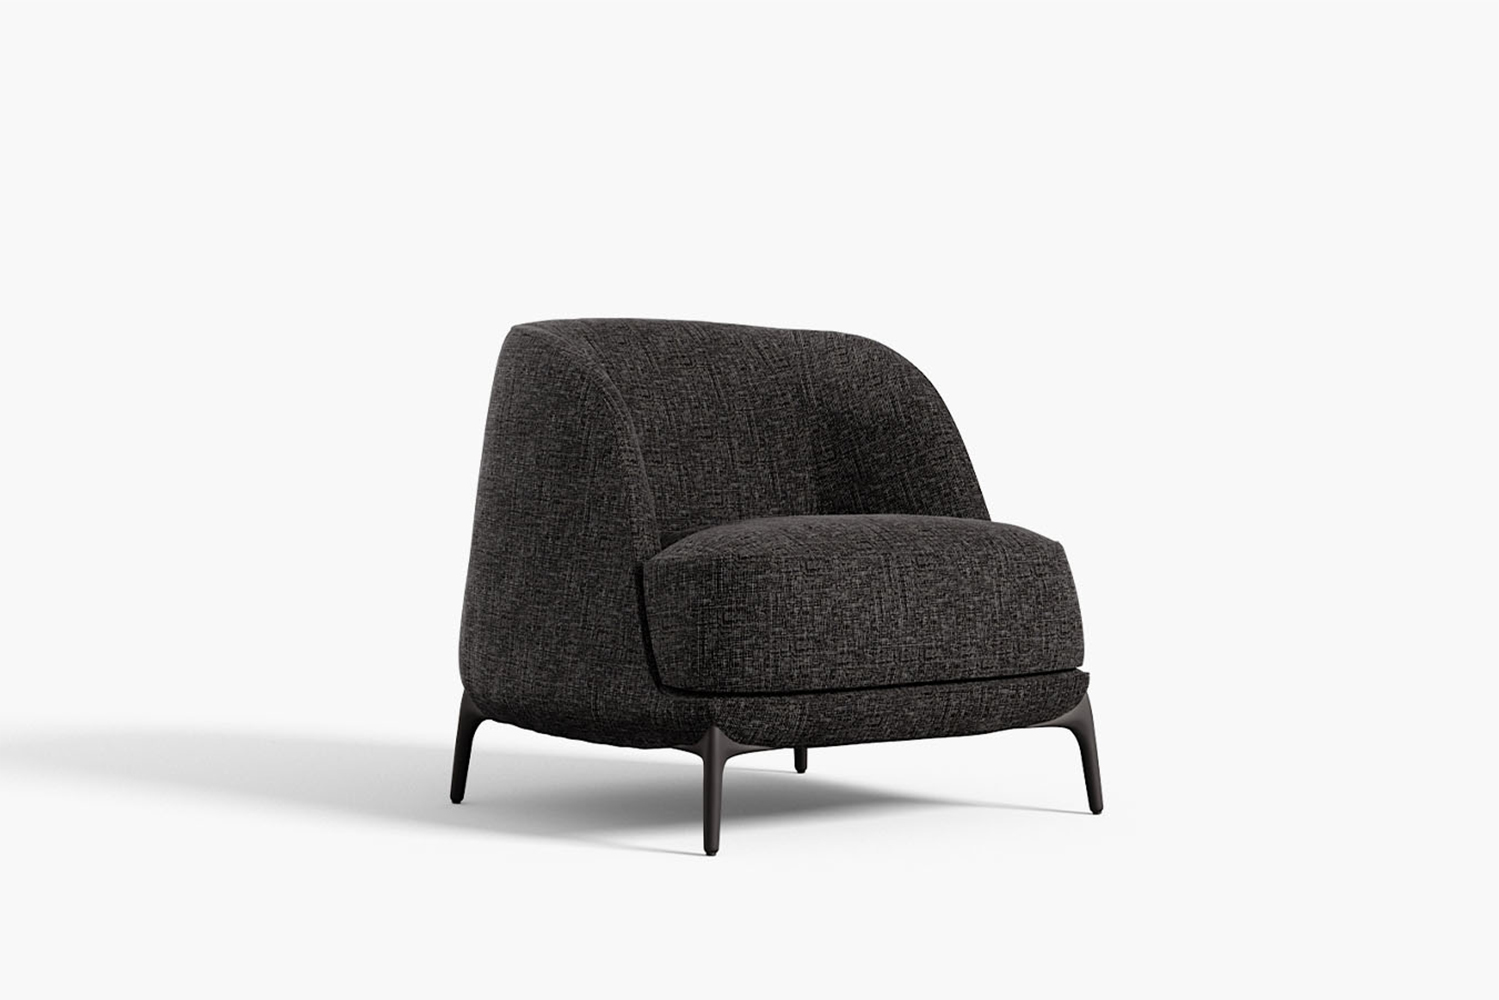 Velvet luxury Italian modern armchair by Novamobili. Sold by Krieder UK.